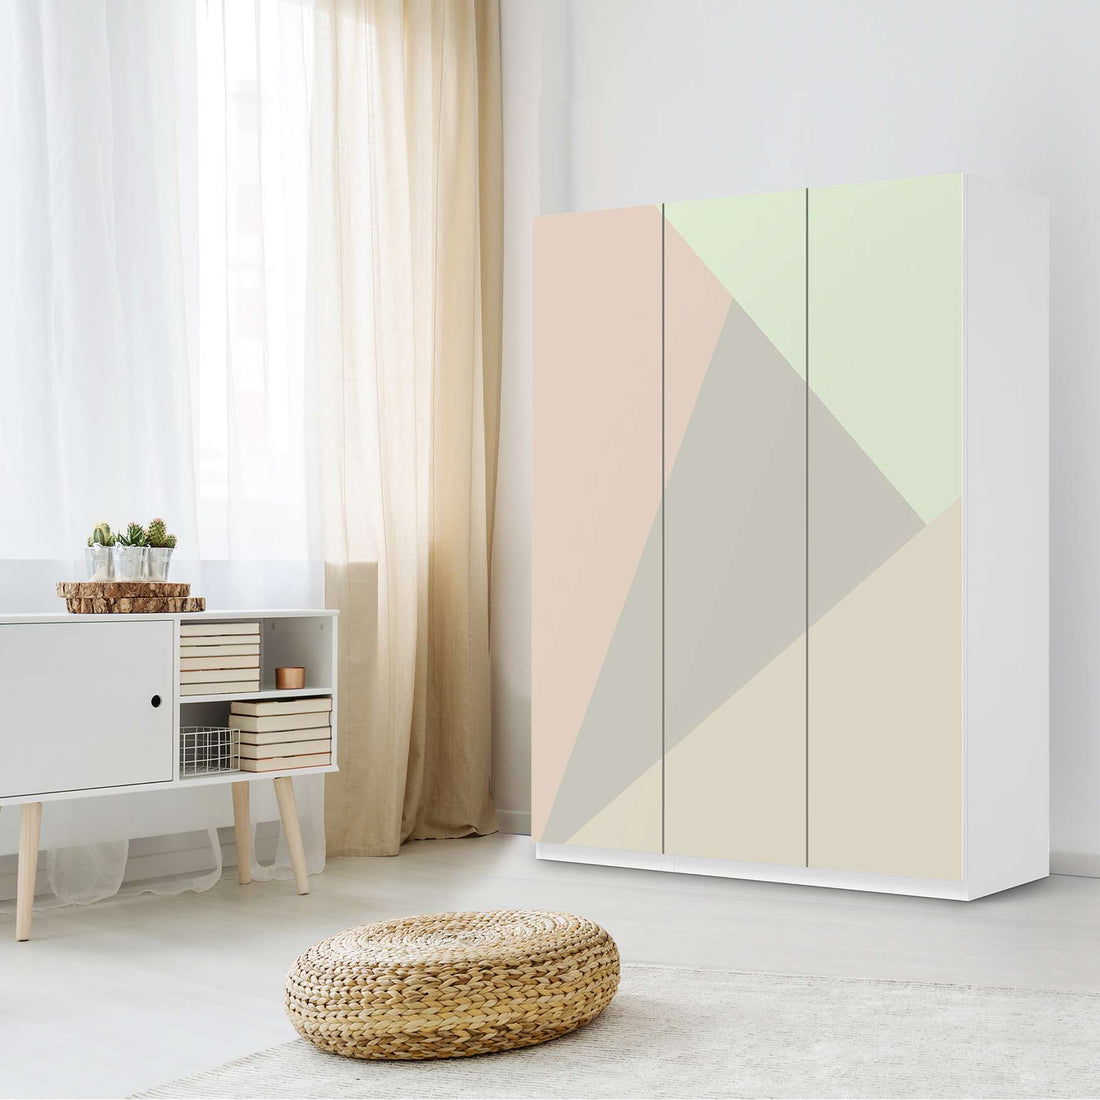 Folie für Möbel Pastell Geometrik - IKEA Pax Schrank 201 cm Höhe - 3 Türen - Schlafzimmer